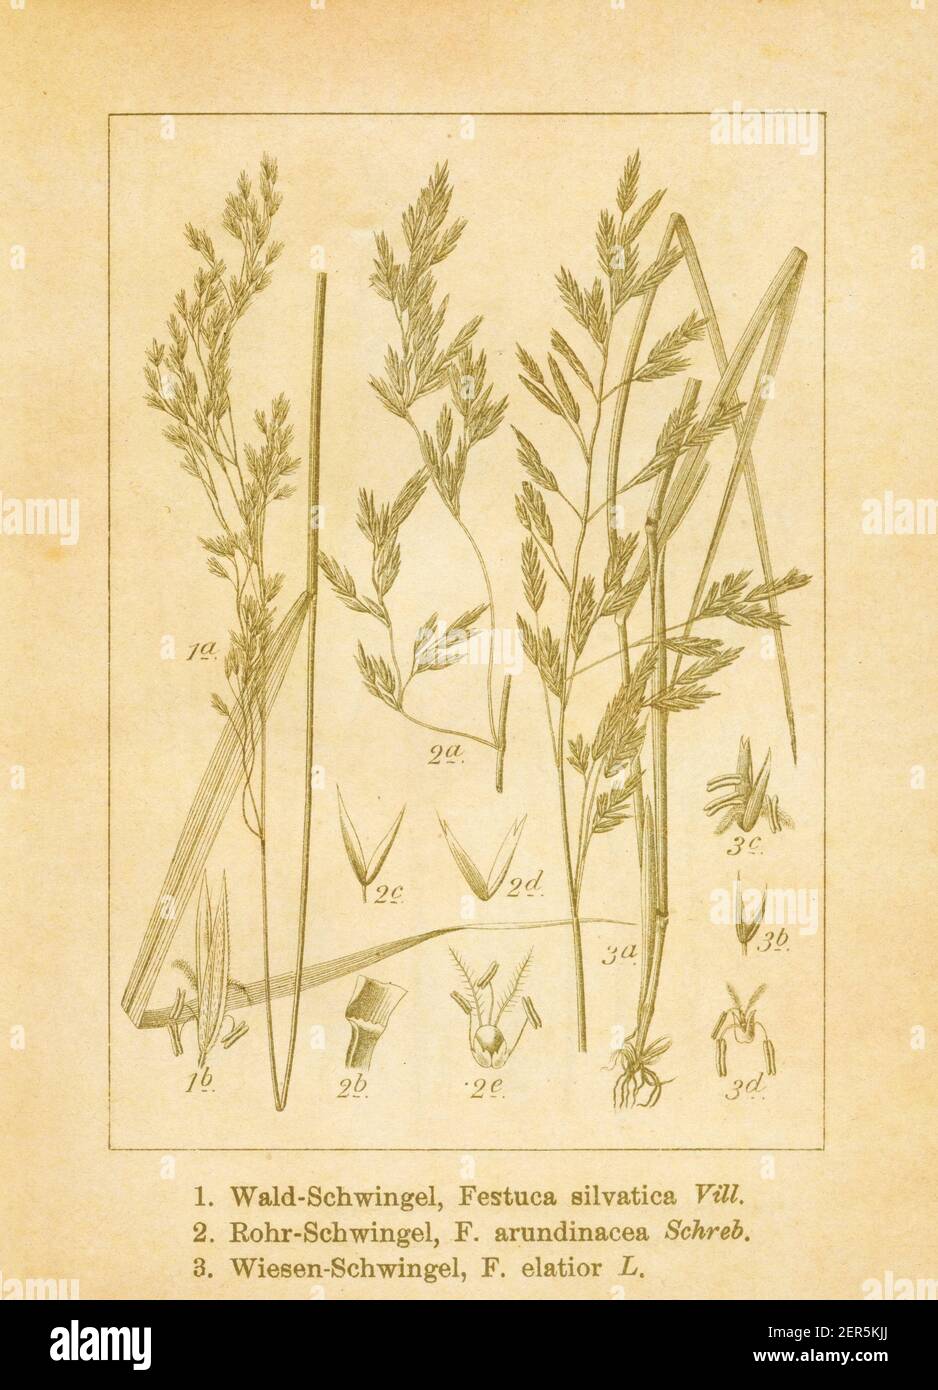 Antique illustration of festuca sylvatica (also known as brachypodium sylvaticum, slender false brome, wood false brome or false brome), festuca arund Stock Photo